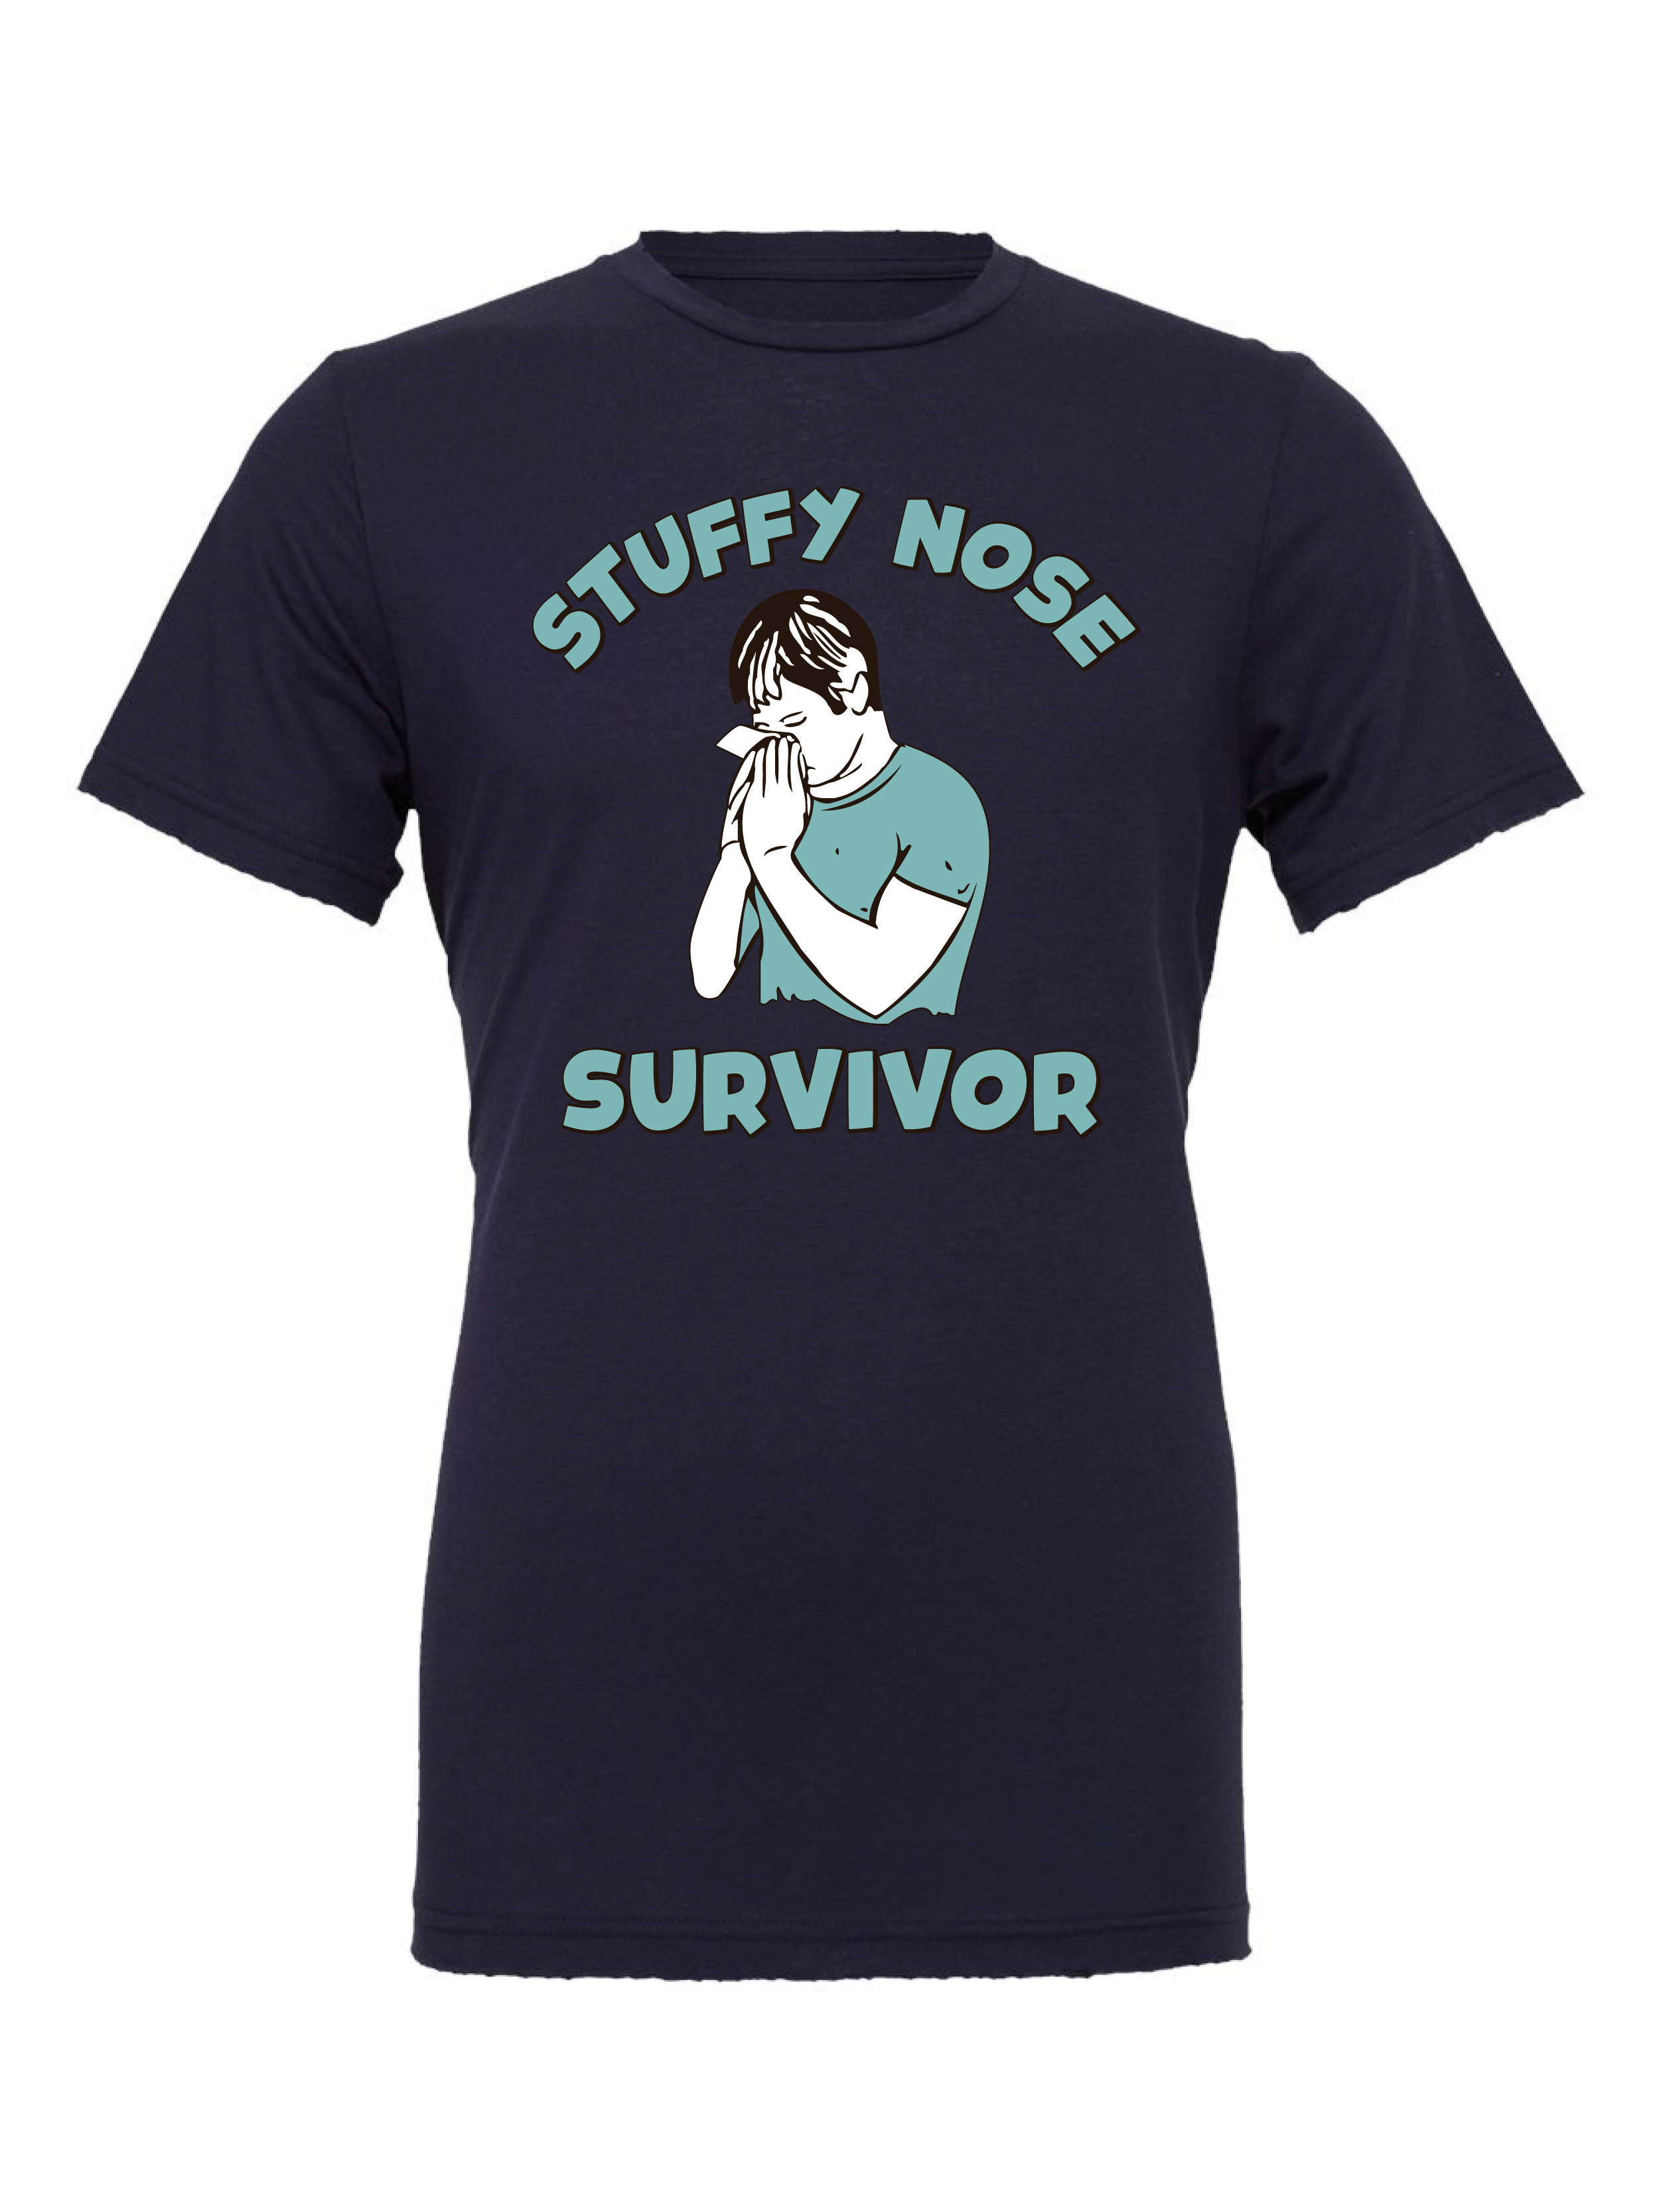 Stuffy Nose Survivor